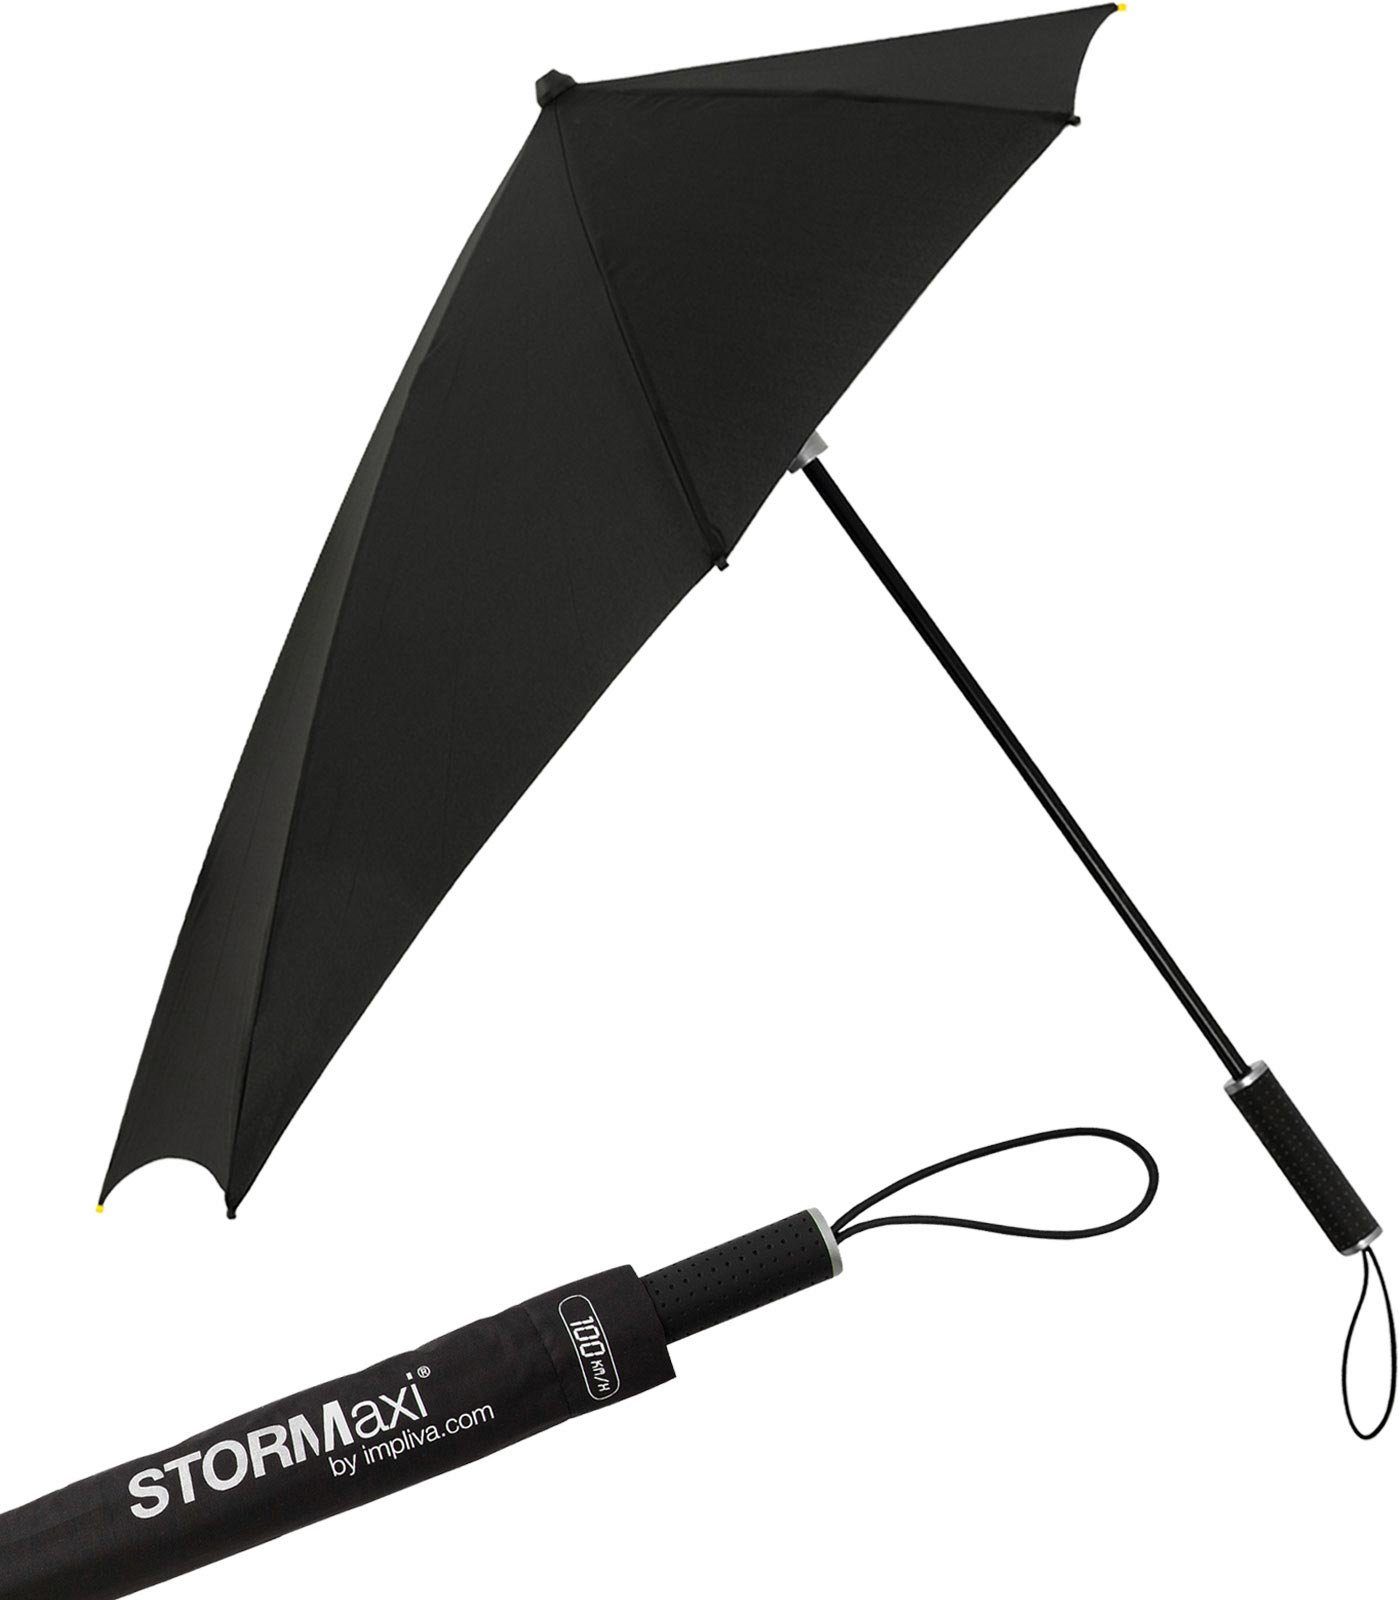 Impliva Stockregenschirm STORMaxi Sturmschirm aerodynamischer Regenschirm, durch seine besondere Form dreht sich der Schirm in den Wind, hält bis zu 100 km/h aus schwarz